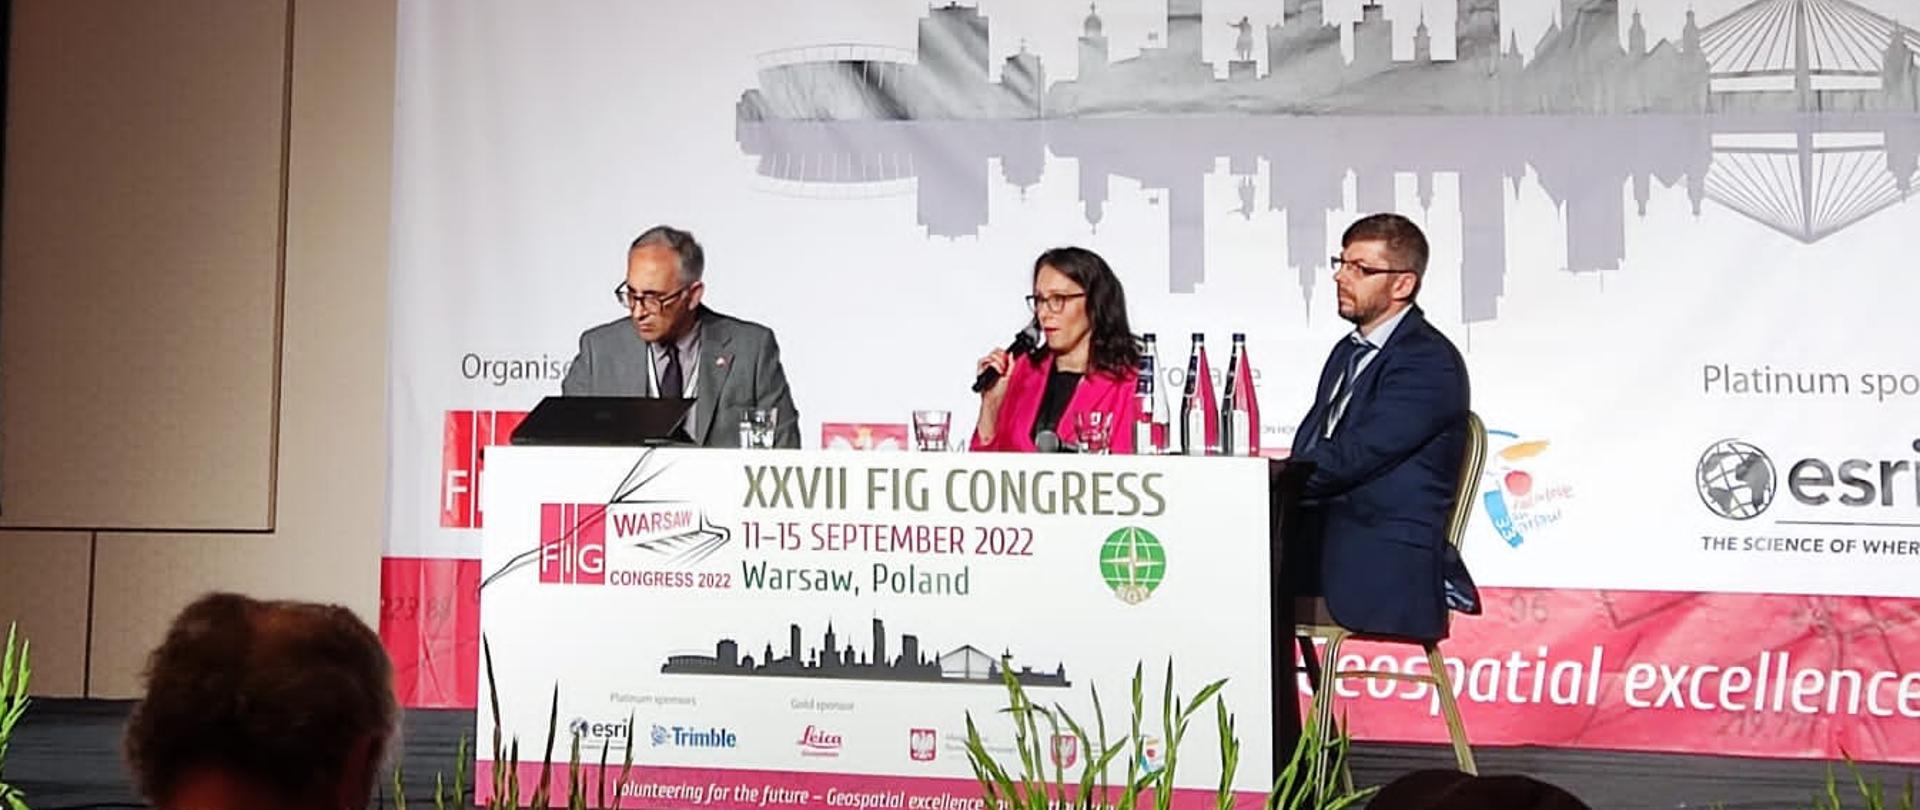 Ewa Surma, Dyrektor Departamentu Strategii, Współpracy Zagranicznej oraz Informacji Publicznej w trakcie dyskusji podczas Kongresu FIG 2022.